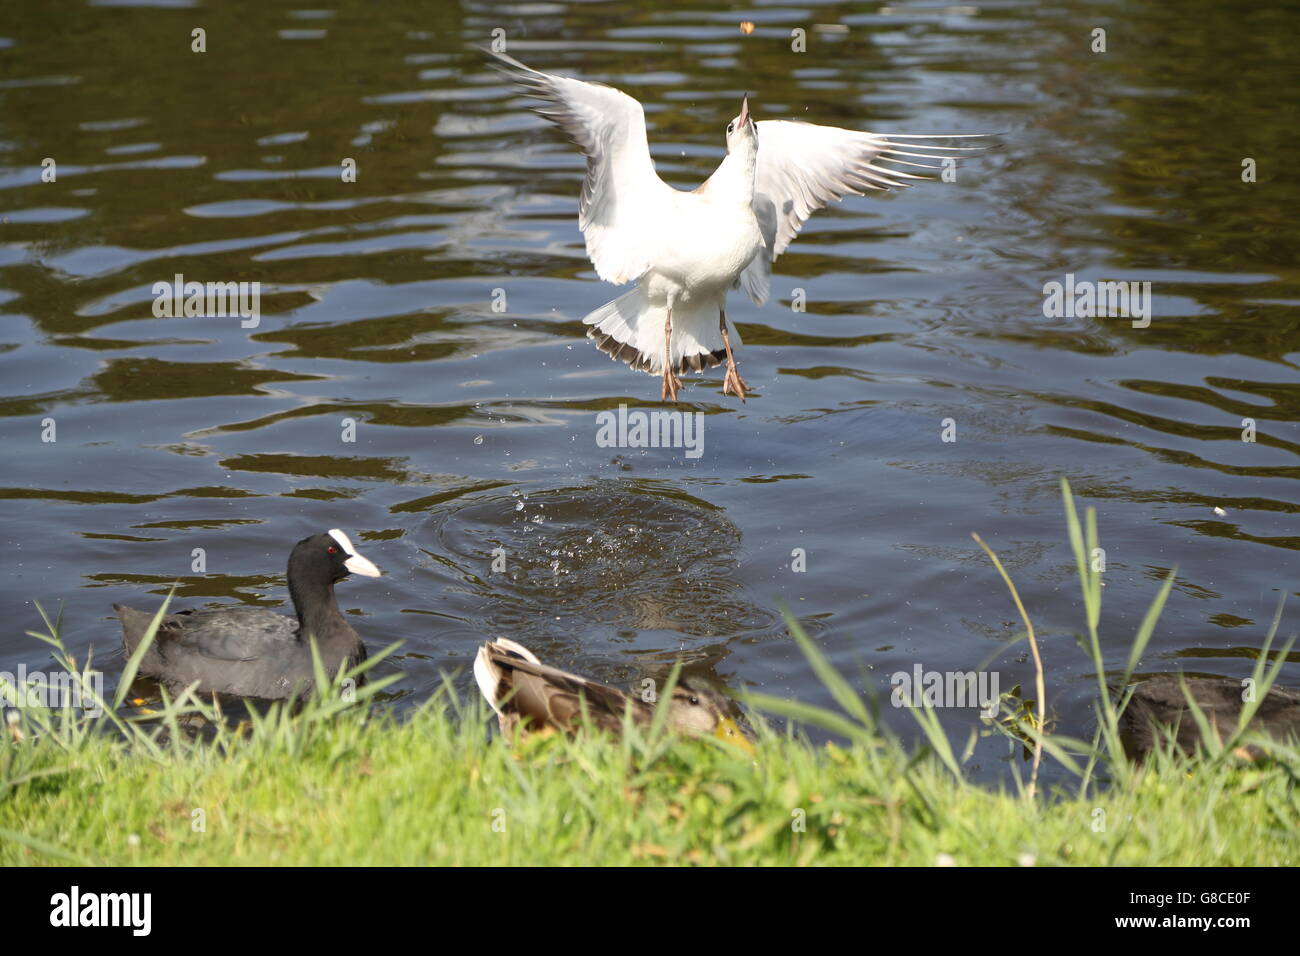 A bird catching food in flight in Vondelpark,Amsterdam Stock Photo